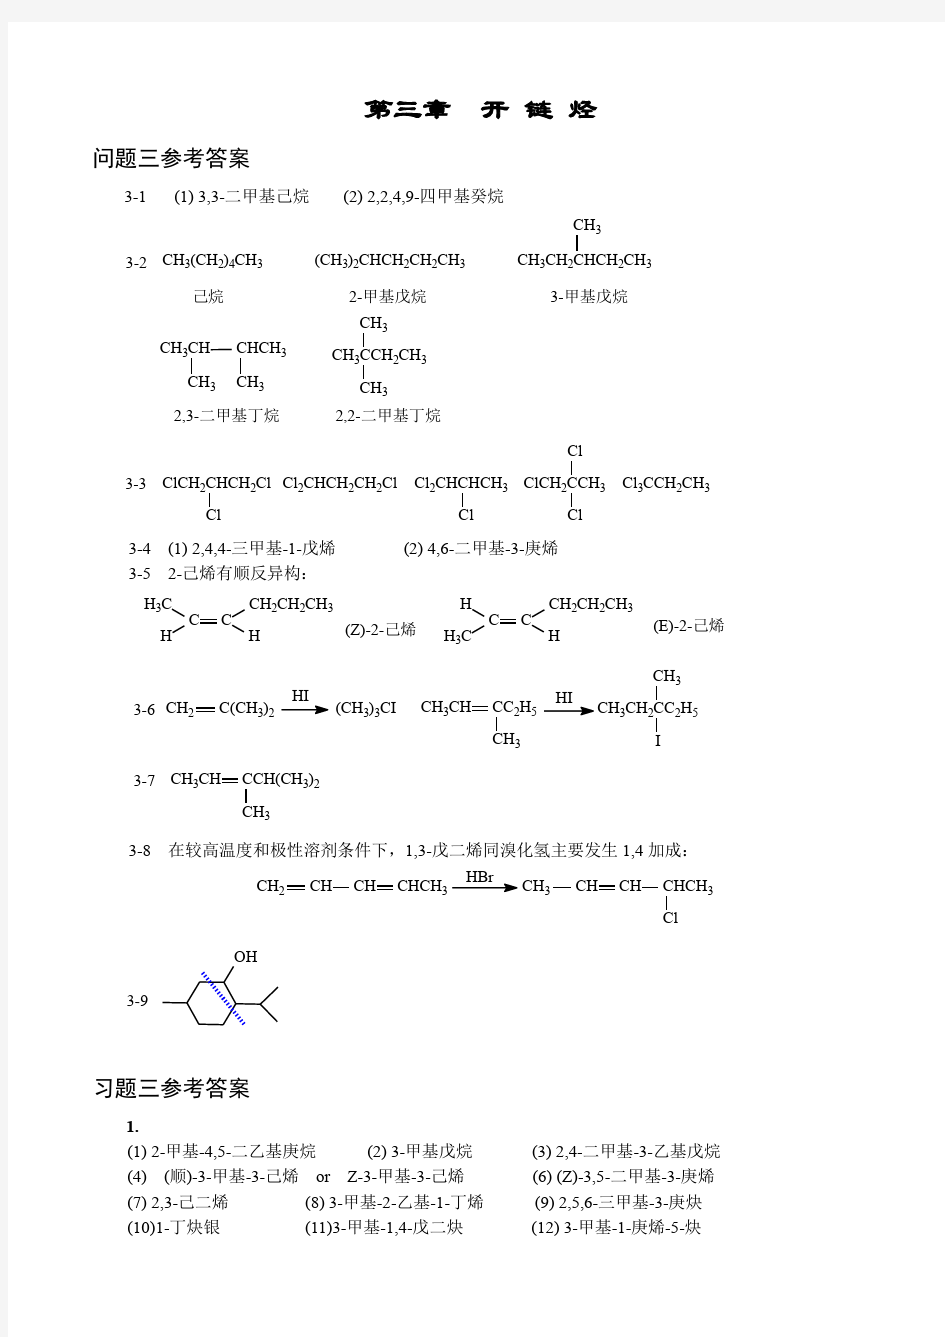 傅建熙《有机化学》课后习题答案 (1)